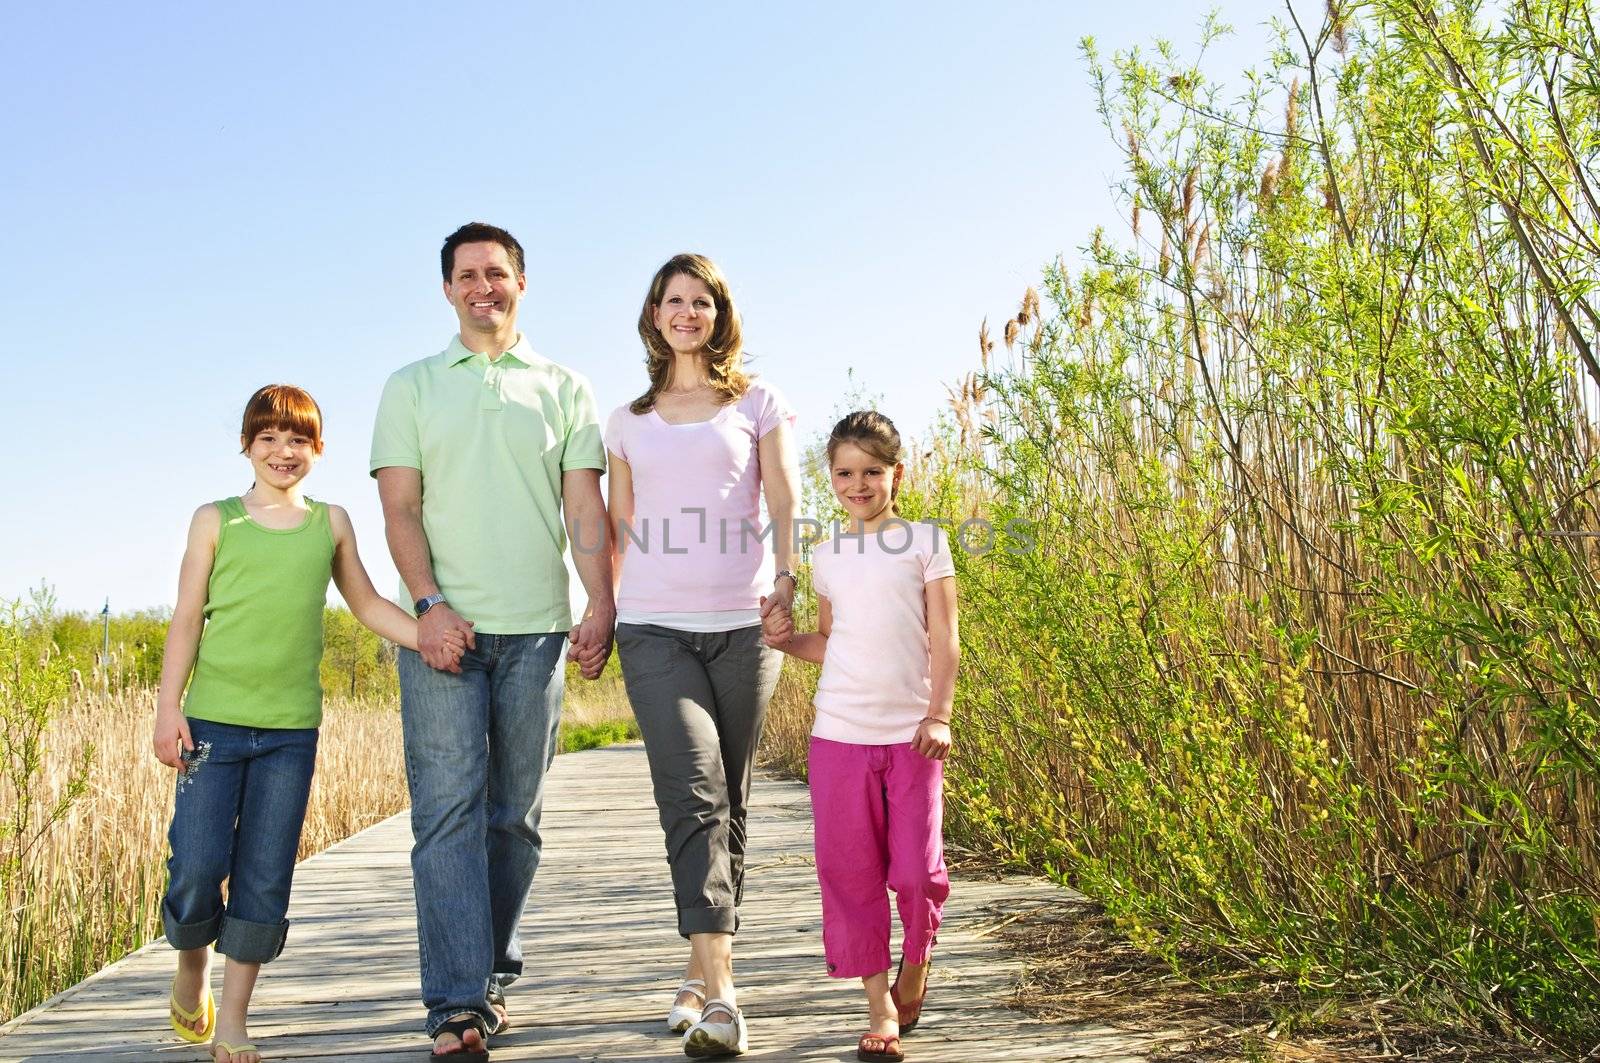 Portrait of happy family of four walking on boardwalk